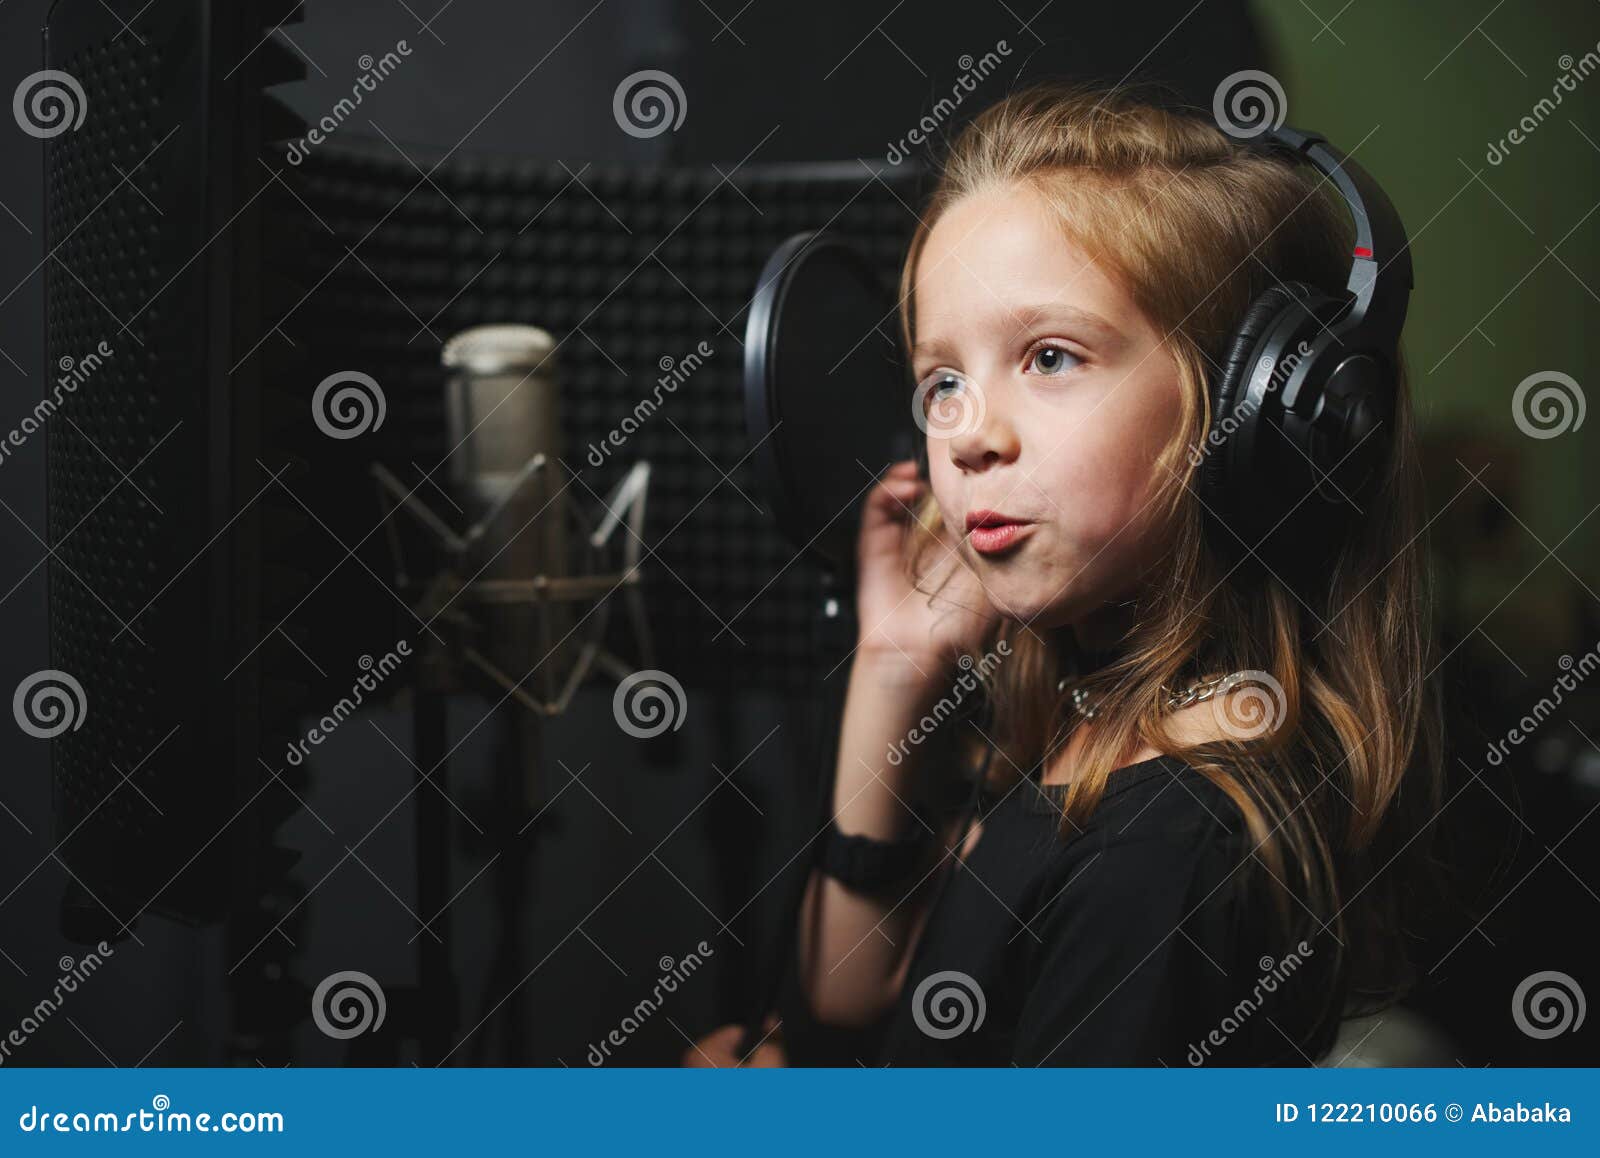 Девочки пои. Девочка поет в студии. Маленькая девочка поет в студии. Дети поют в студии звукозаписи. Звукозапись картинки для детей.